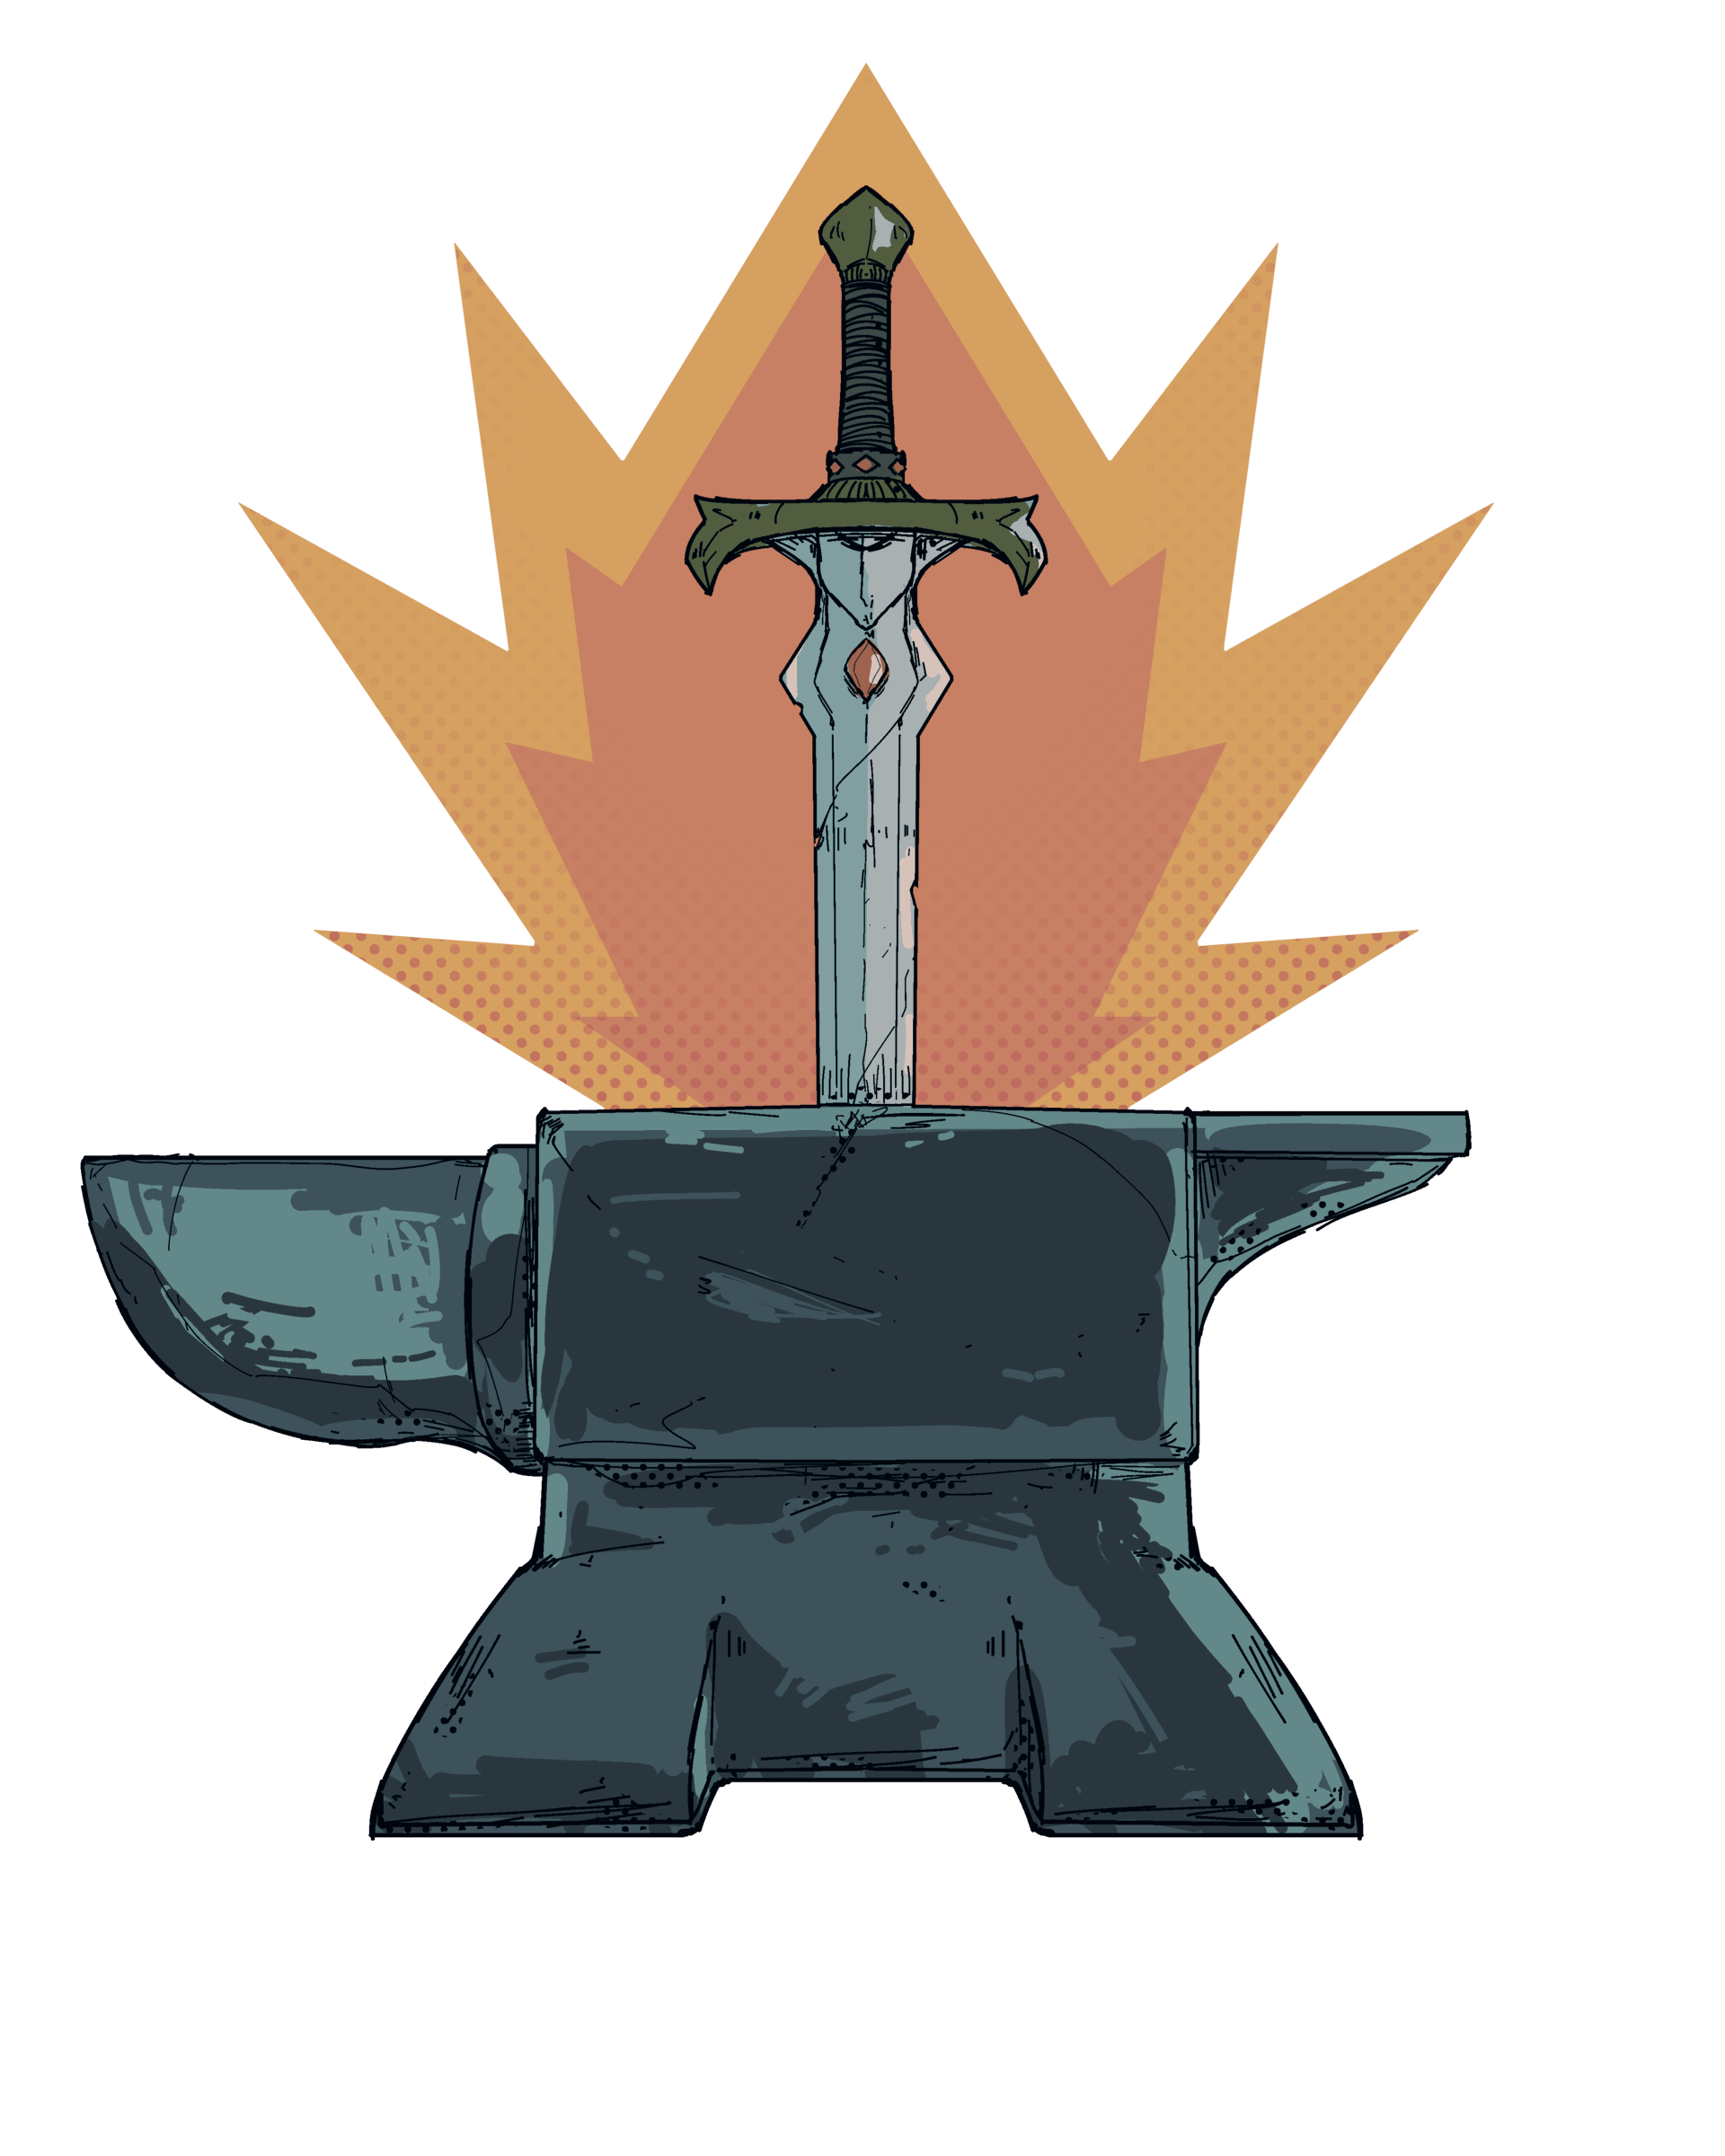 Sword in anvil